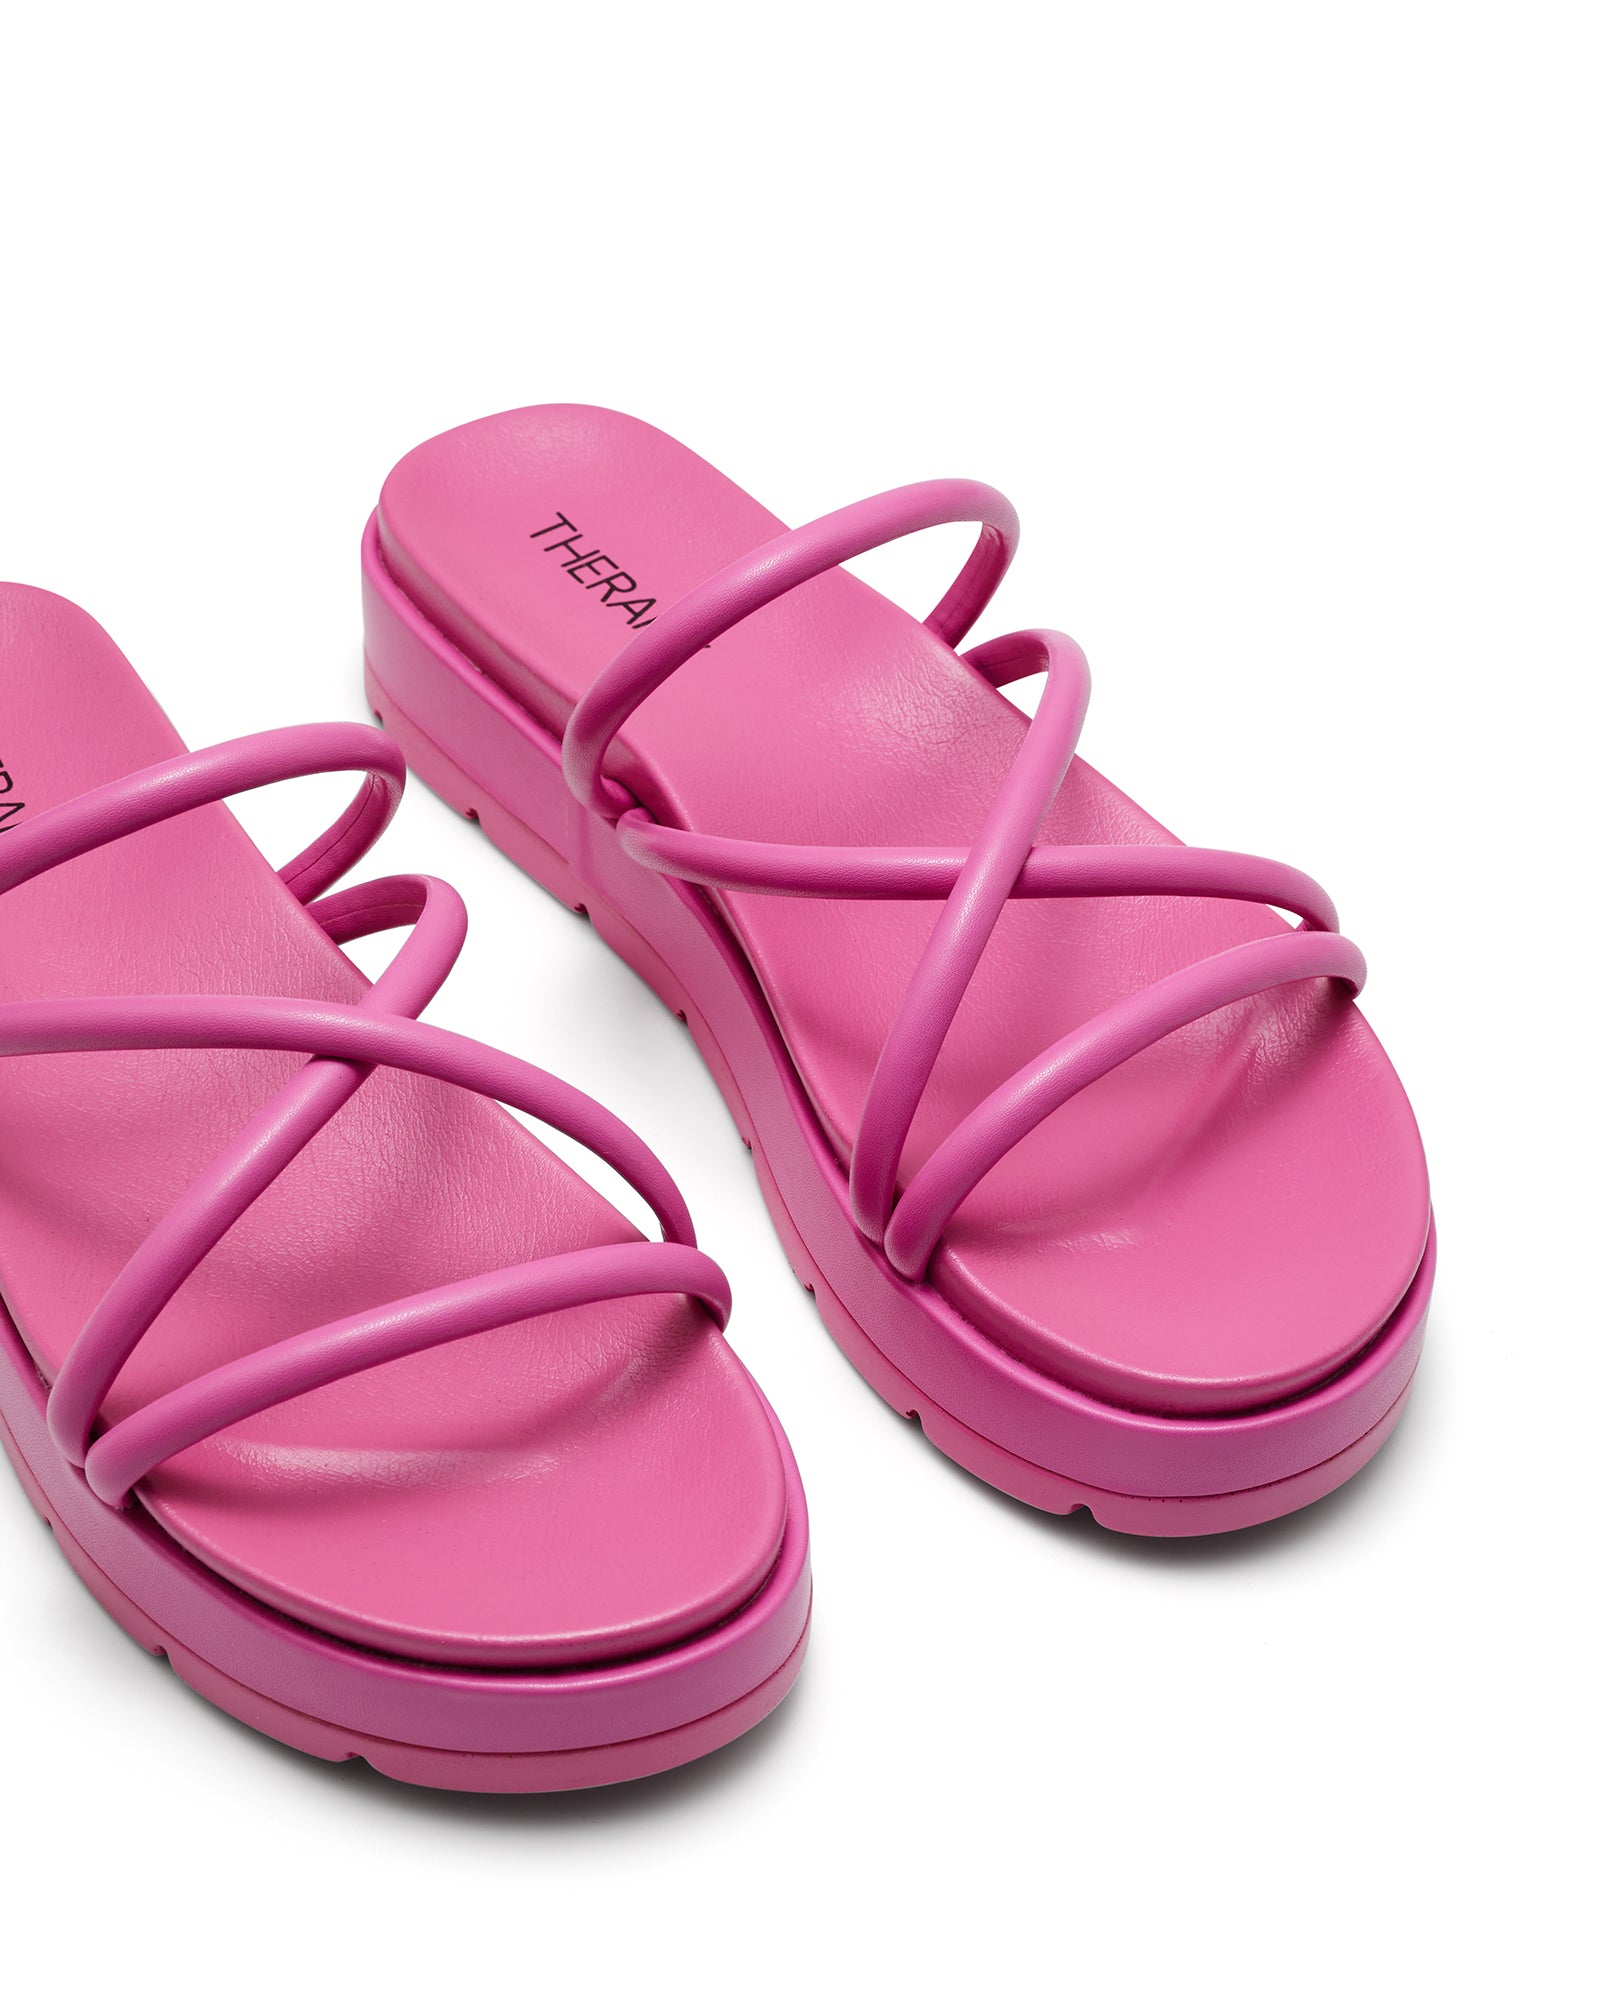 Therapy Shoes Sliver Pink | Women's Sandals | Flatform | Platform | Slide